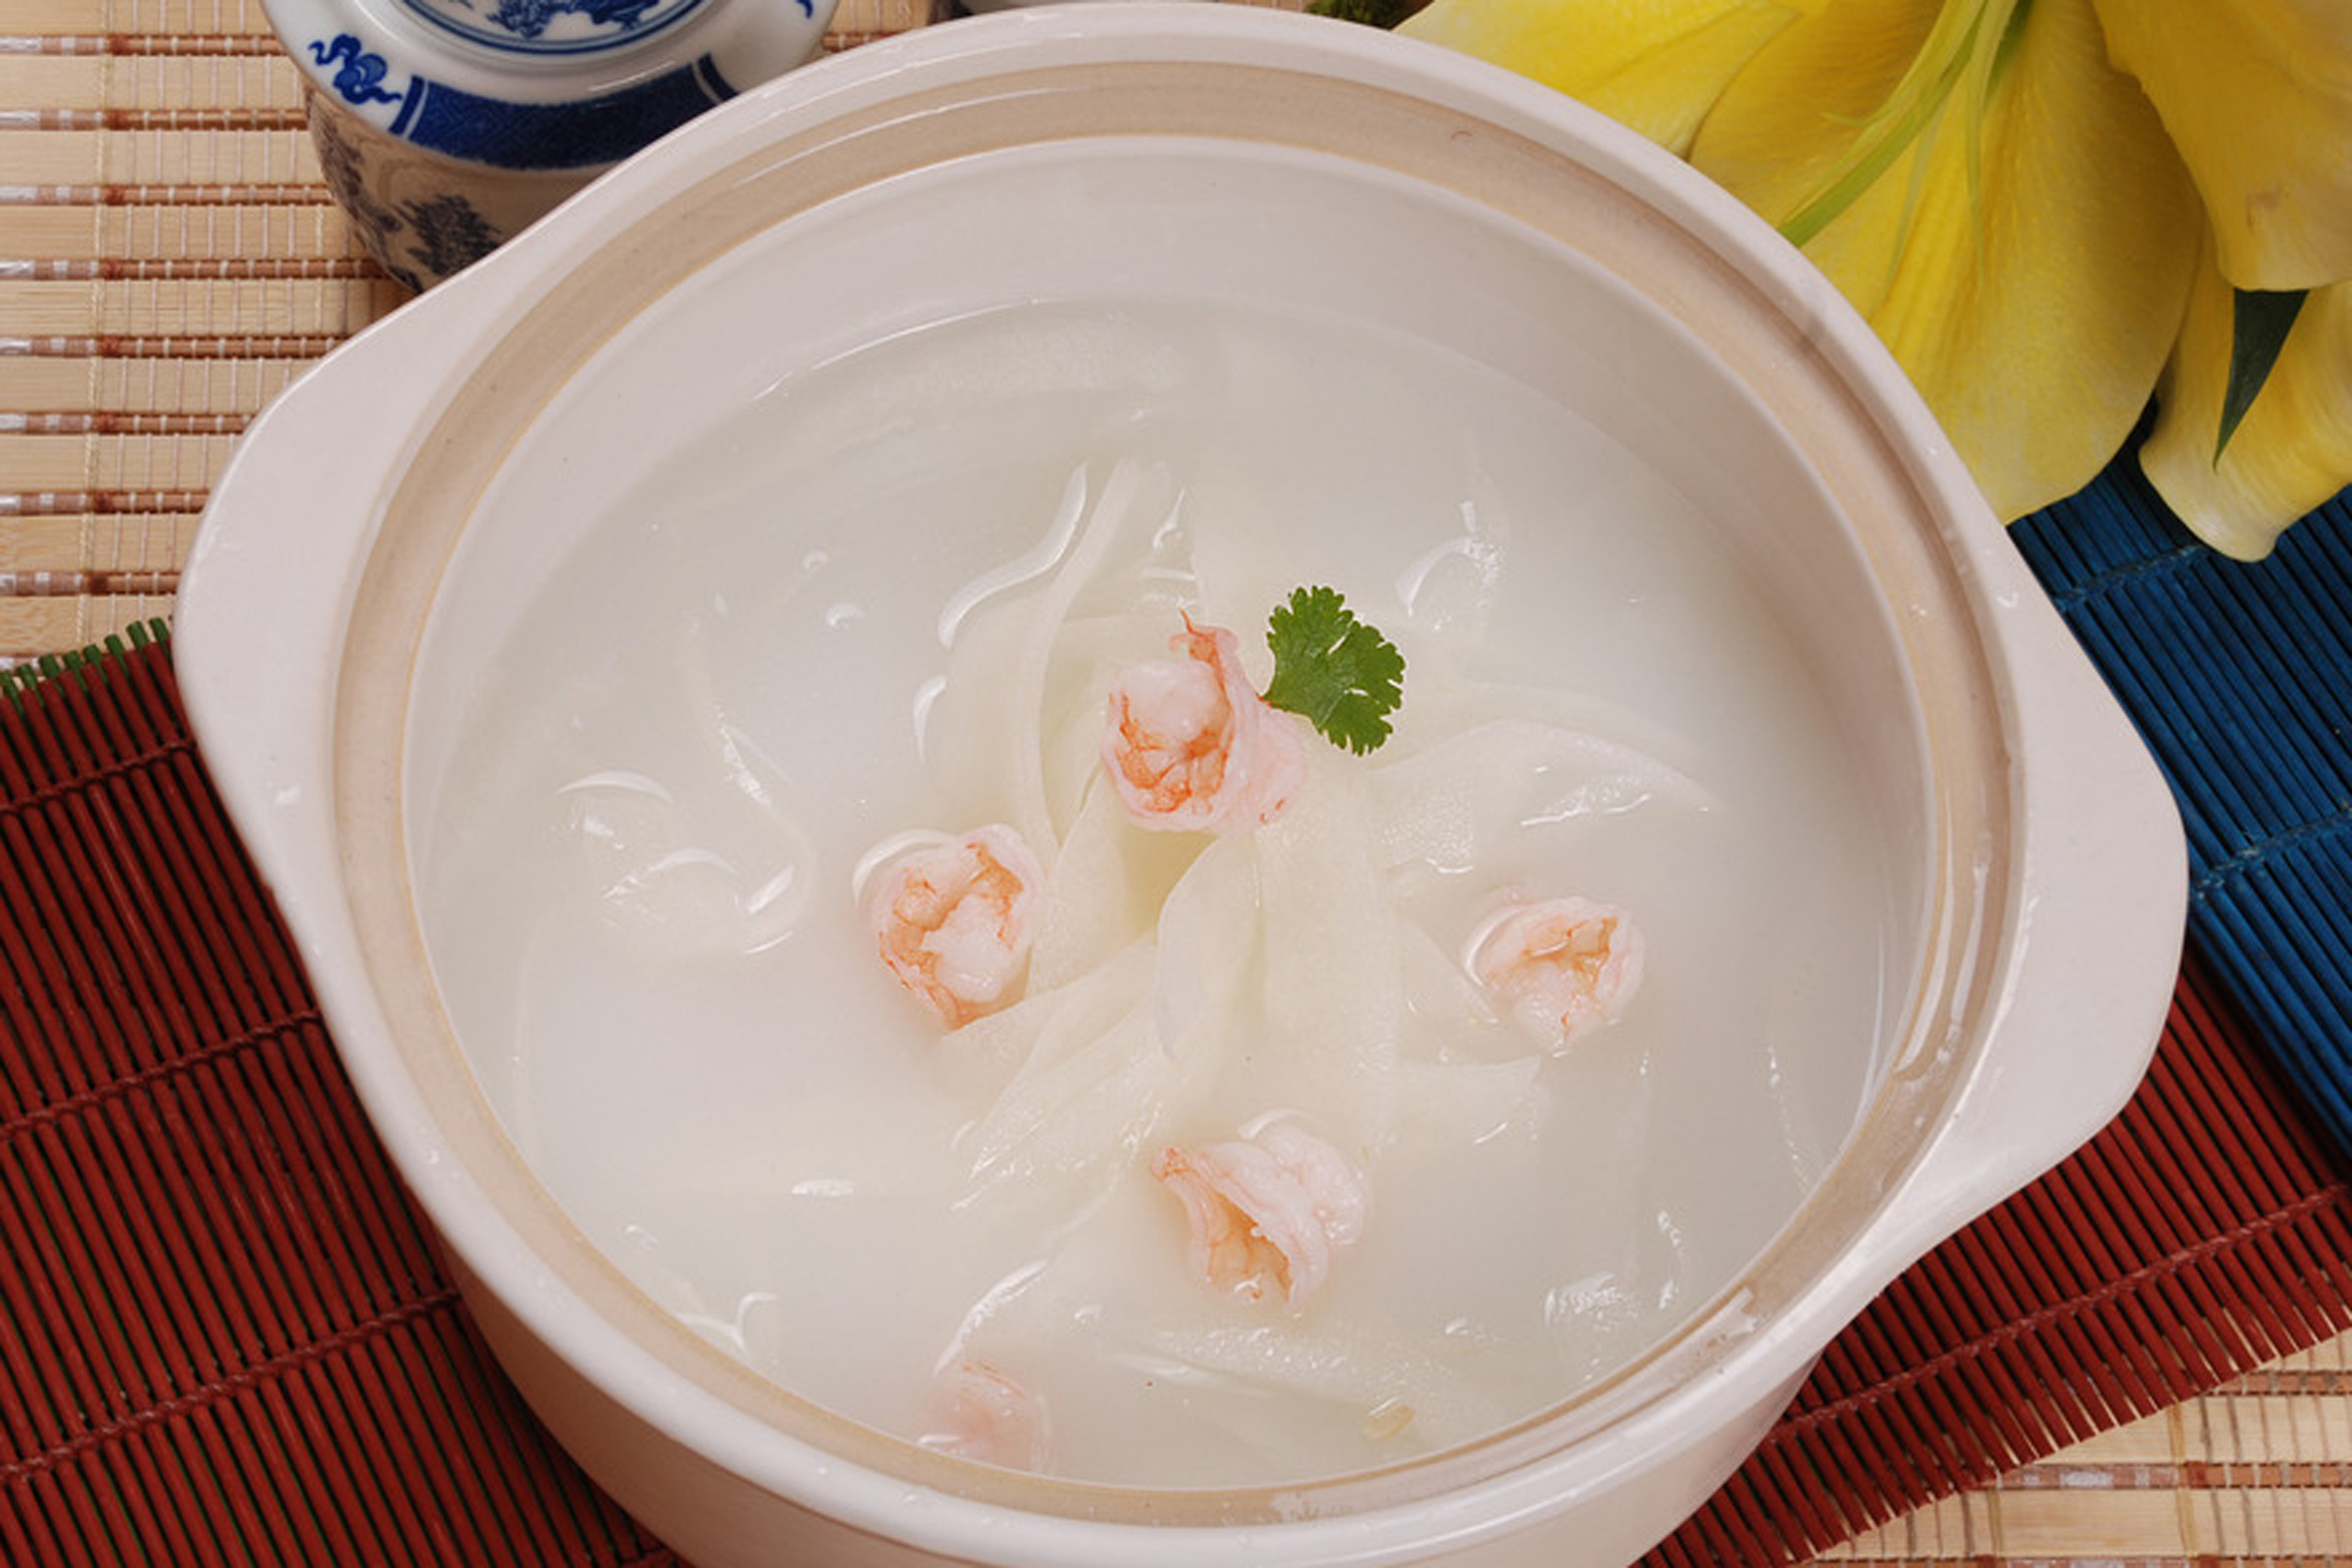 黄瓜虾仁汤图片